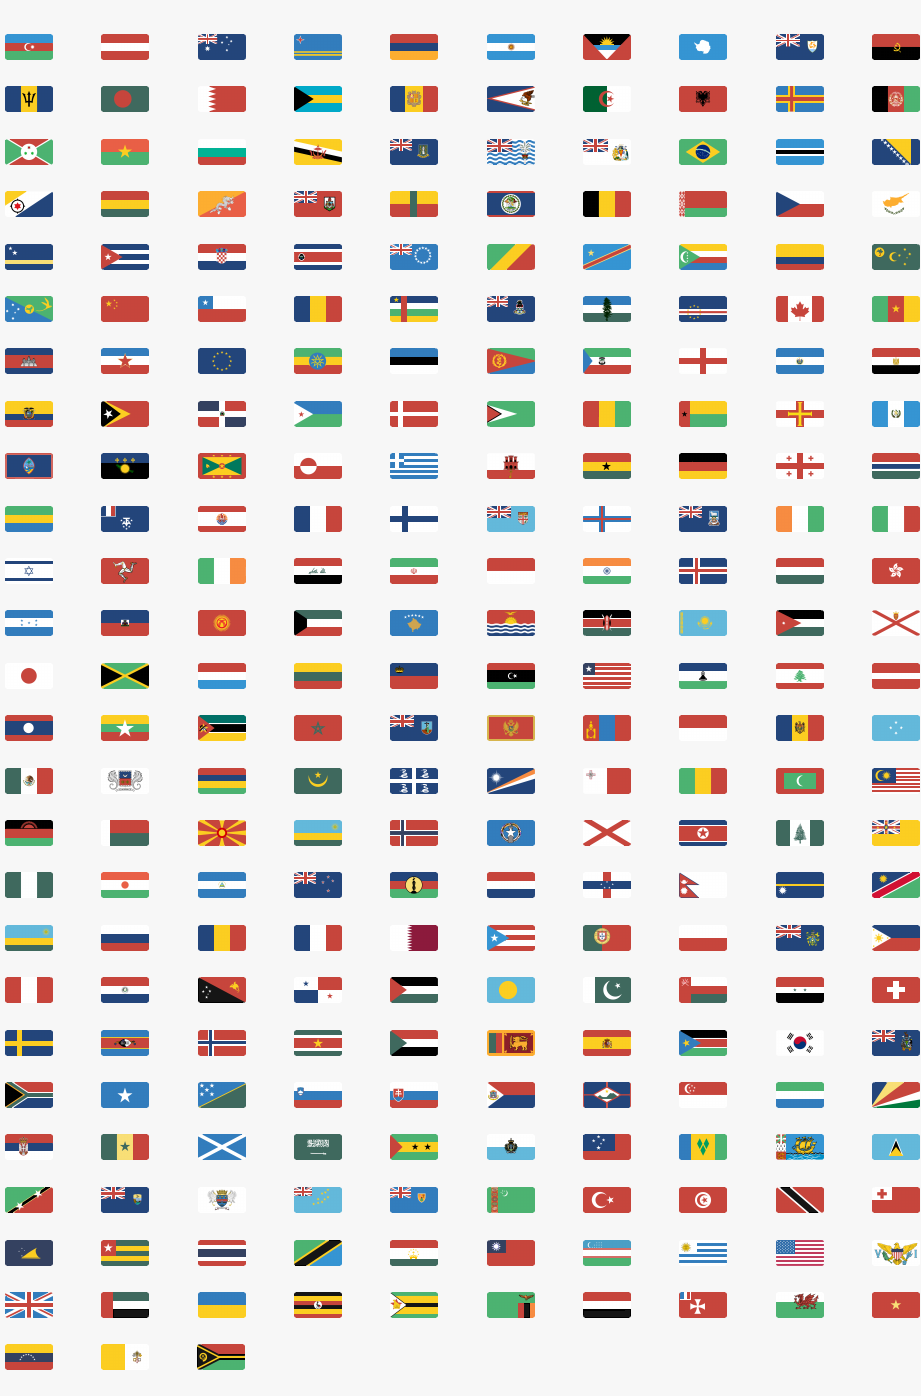 Флаги городов государств. Флаги стран и их названия на русском языке. Как выглядят флаги стран. Флаг какой страны.